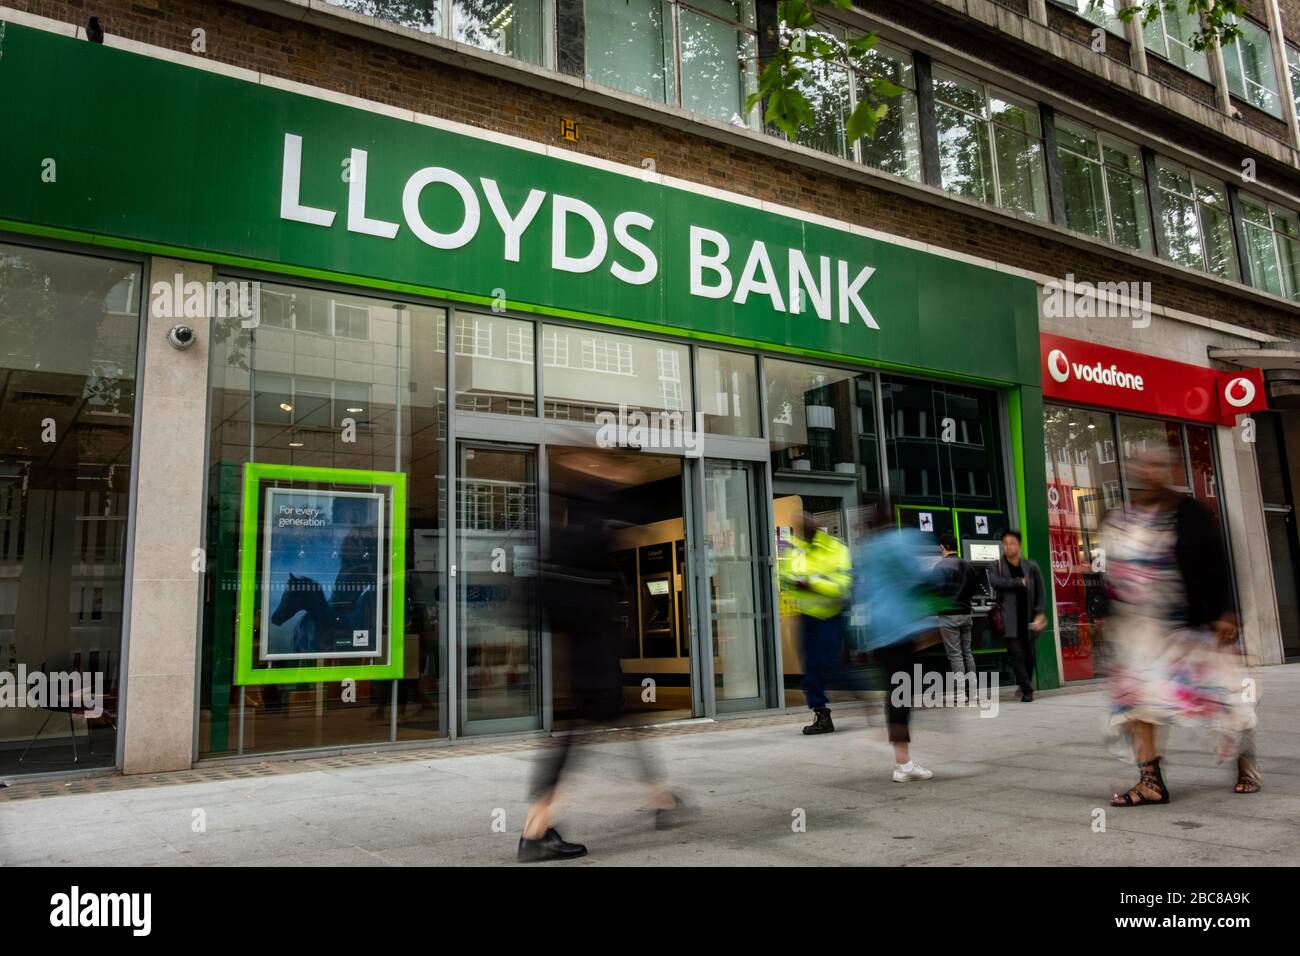 Lloyds- sucursal bancaria británica de calle alta, logotipo exterior / señalización- Londres Foto de stock